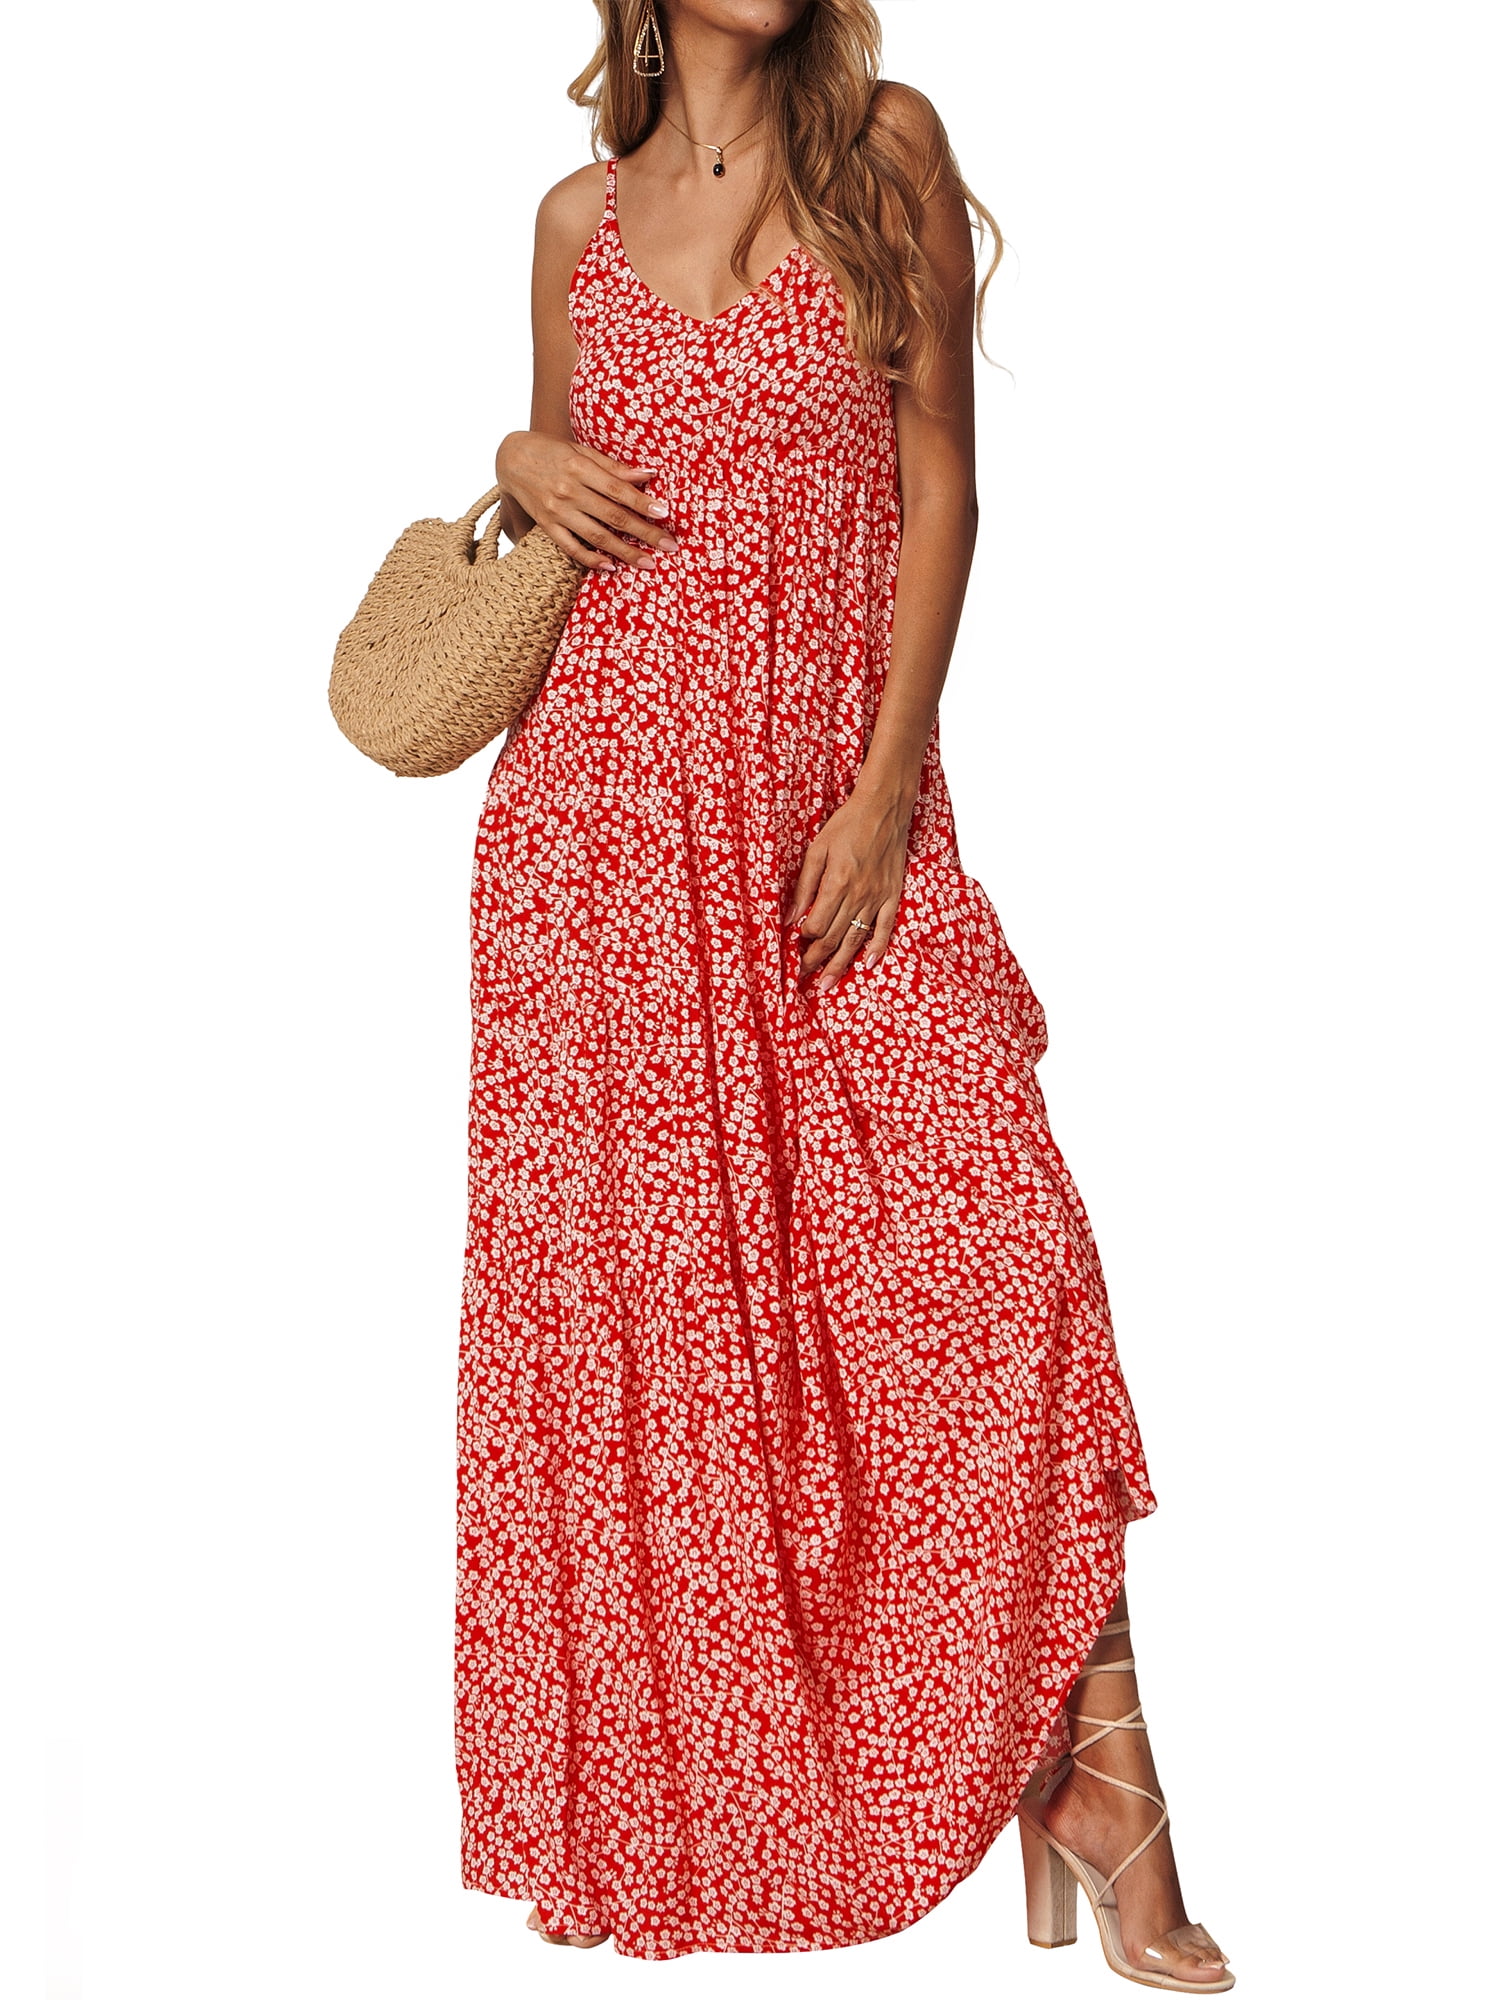 Women's Holiday Sleeveless Beach Floral Long Maxi Dress Swing Sun Dress Summer